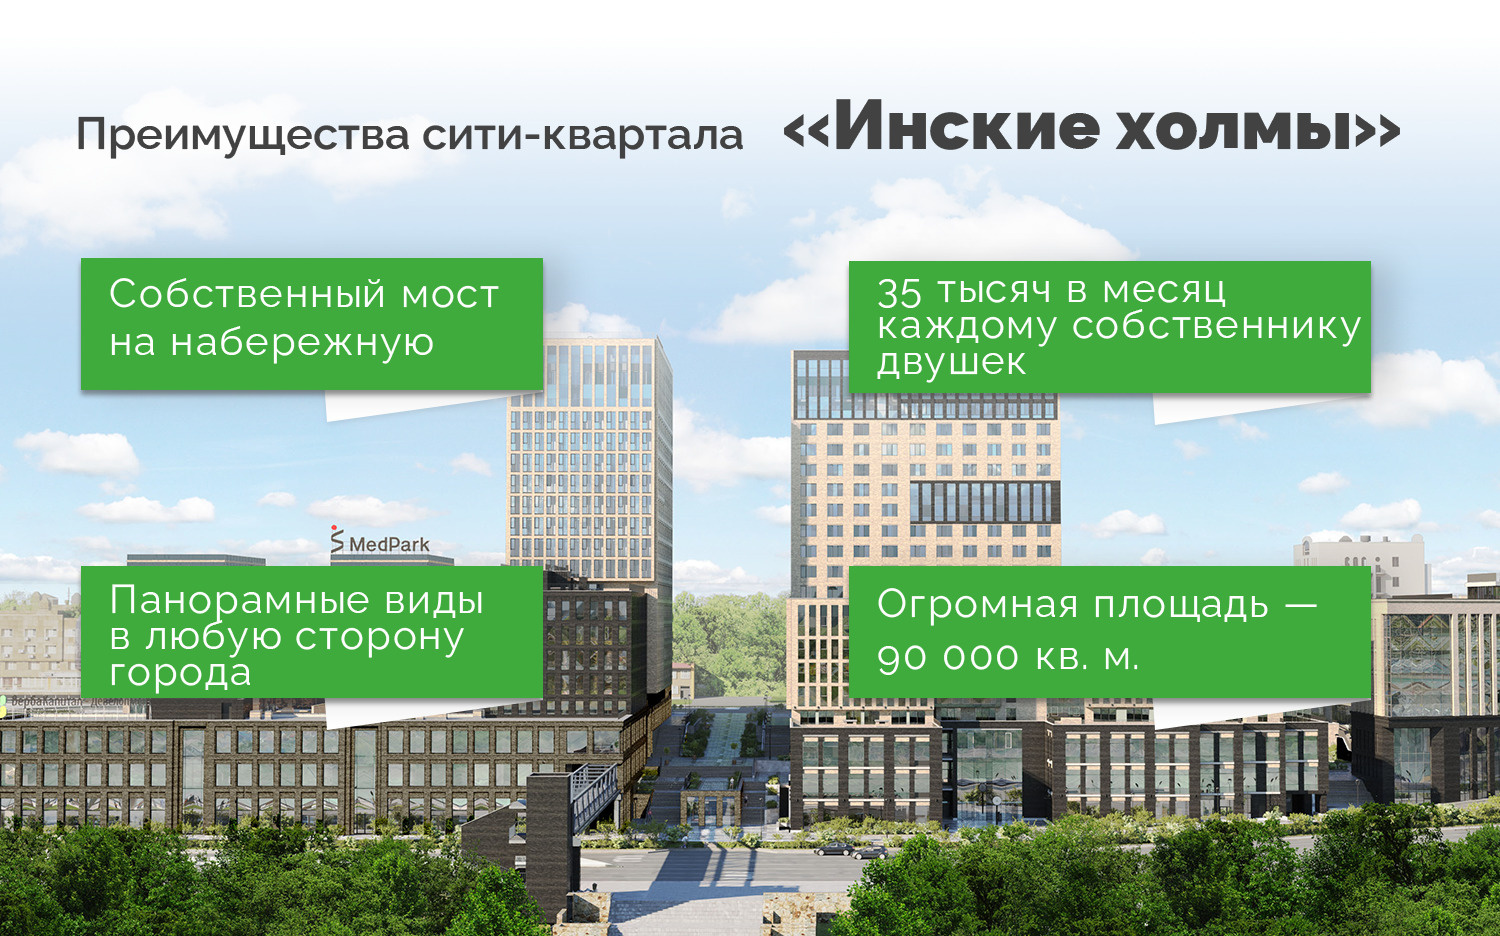 По словам Юрия Ильченко, сибиряки быстро приняли формат апартаментов  